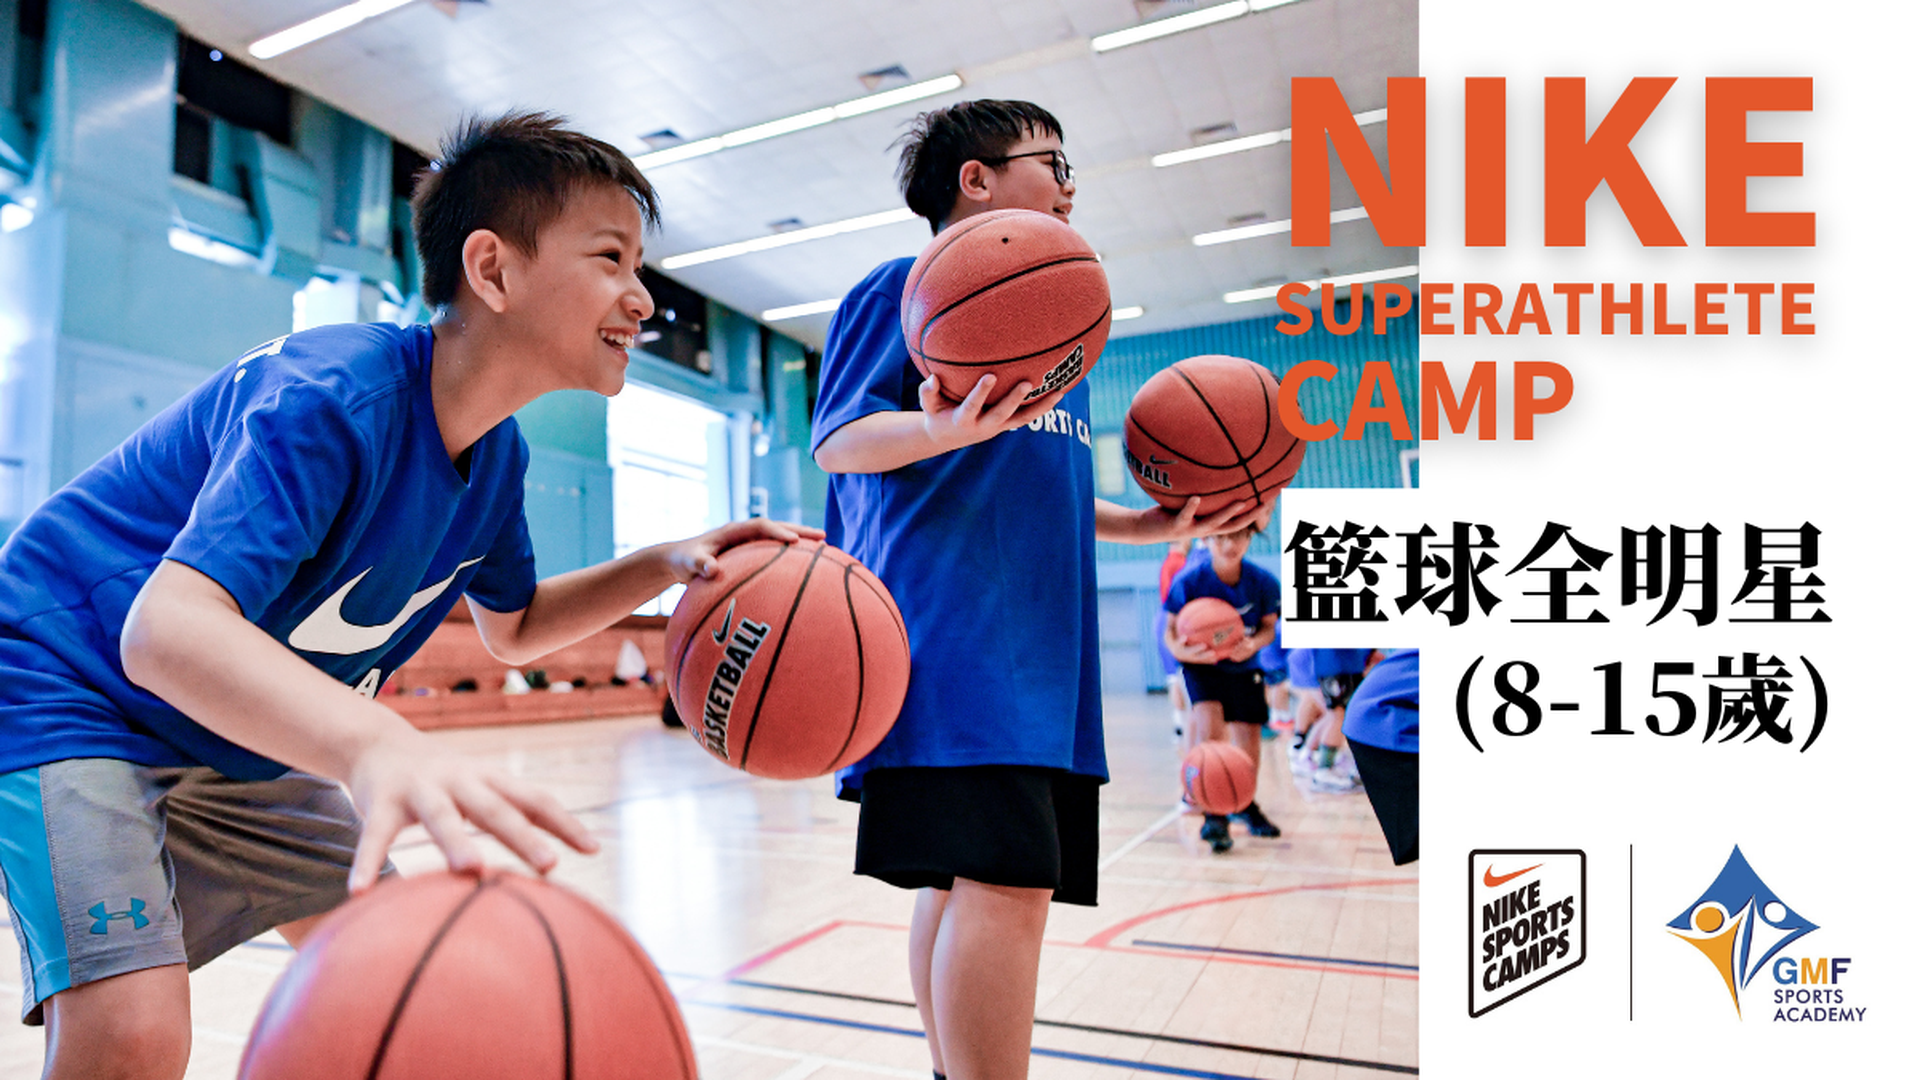 NIKE Super Athlete Camp NIKE 籃球全明星 (8-15歲)